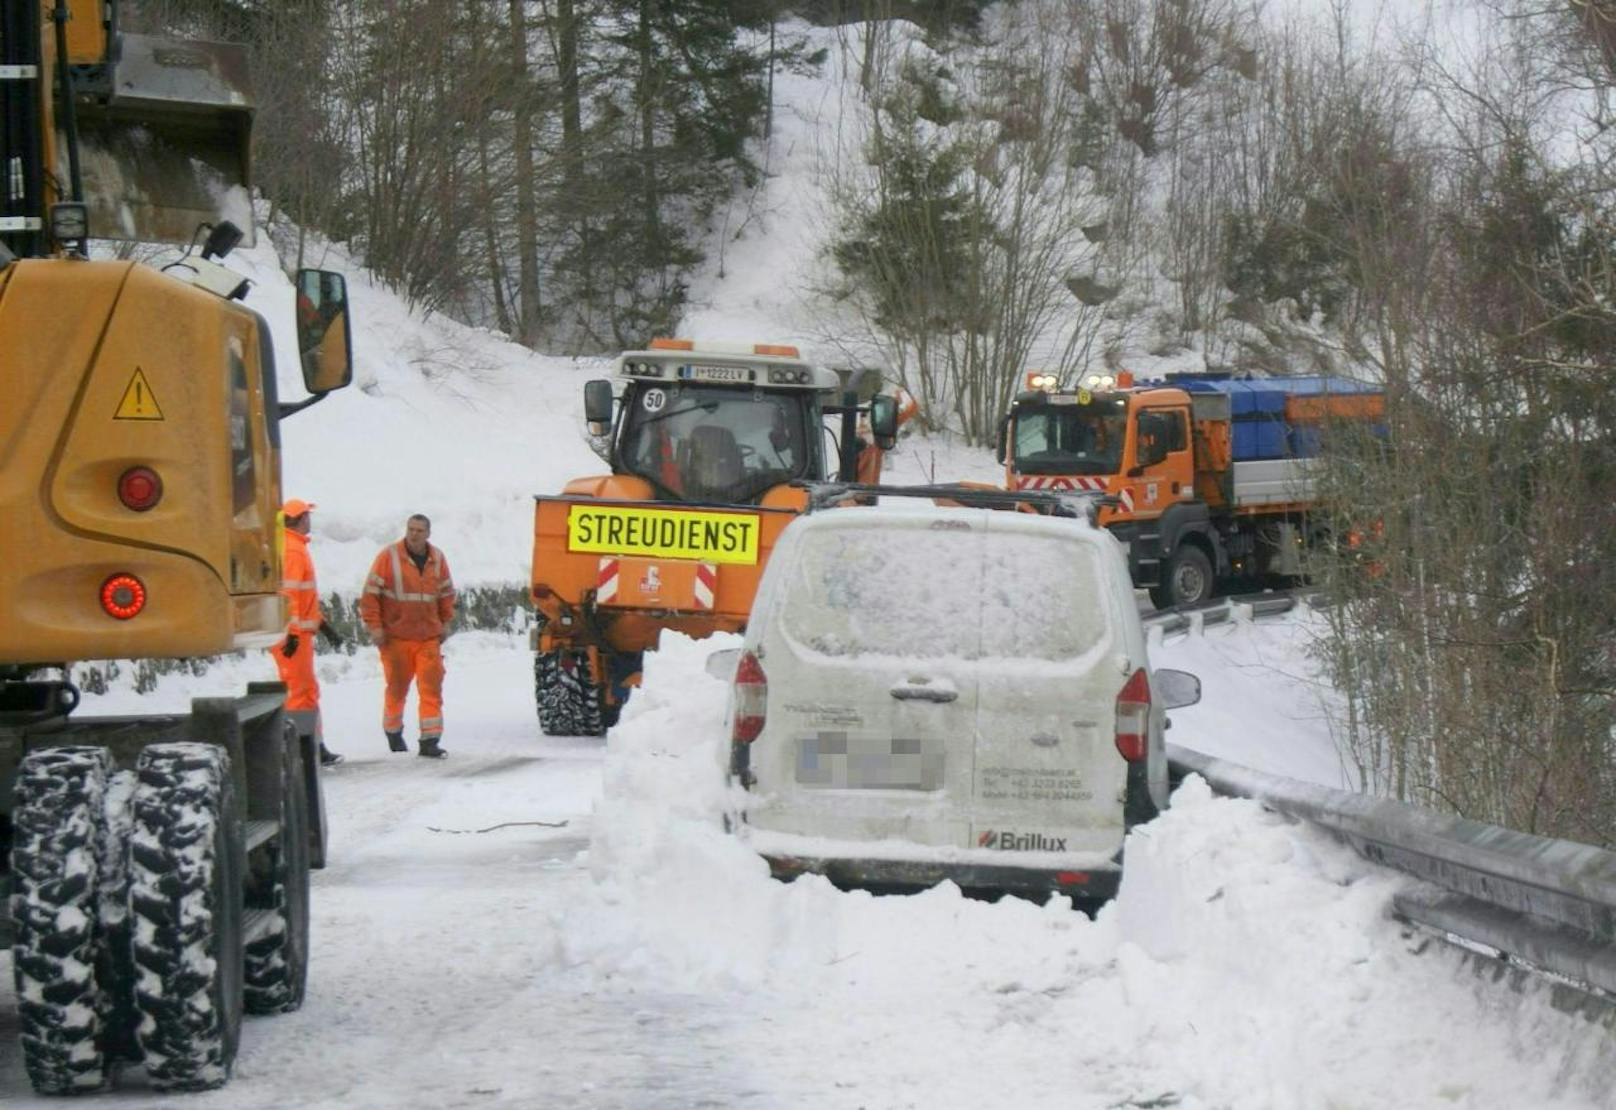 Schließlich mussten sogar die bestehenden Lastwägen-Fahrverbote in Nordtirol zwischenzeitlich aufgehoben werden um die Situation unter Kontrolle zu bekommen.